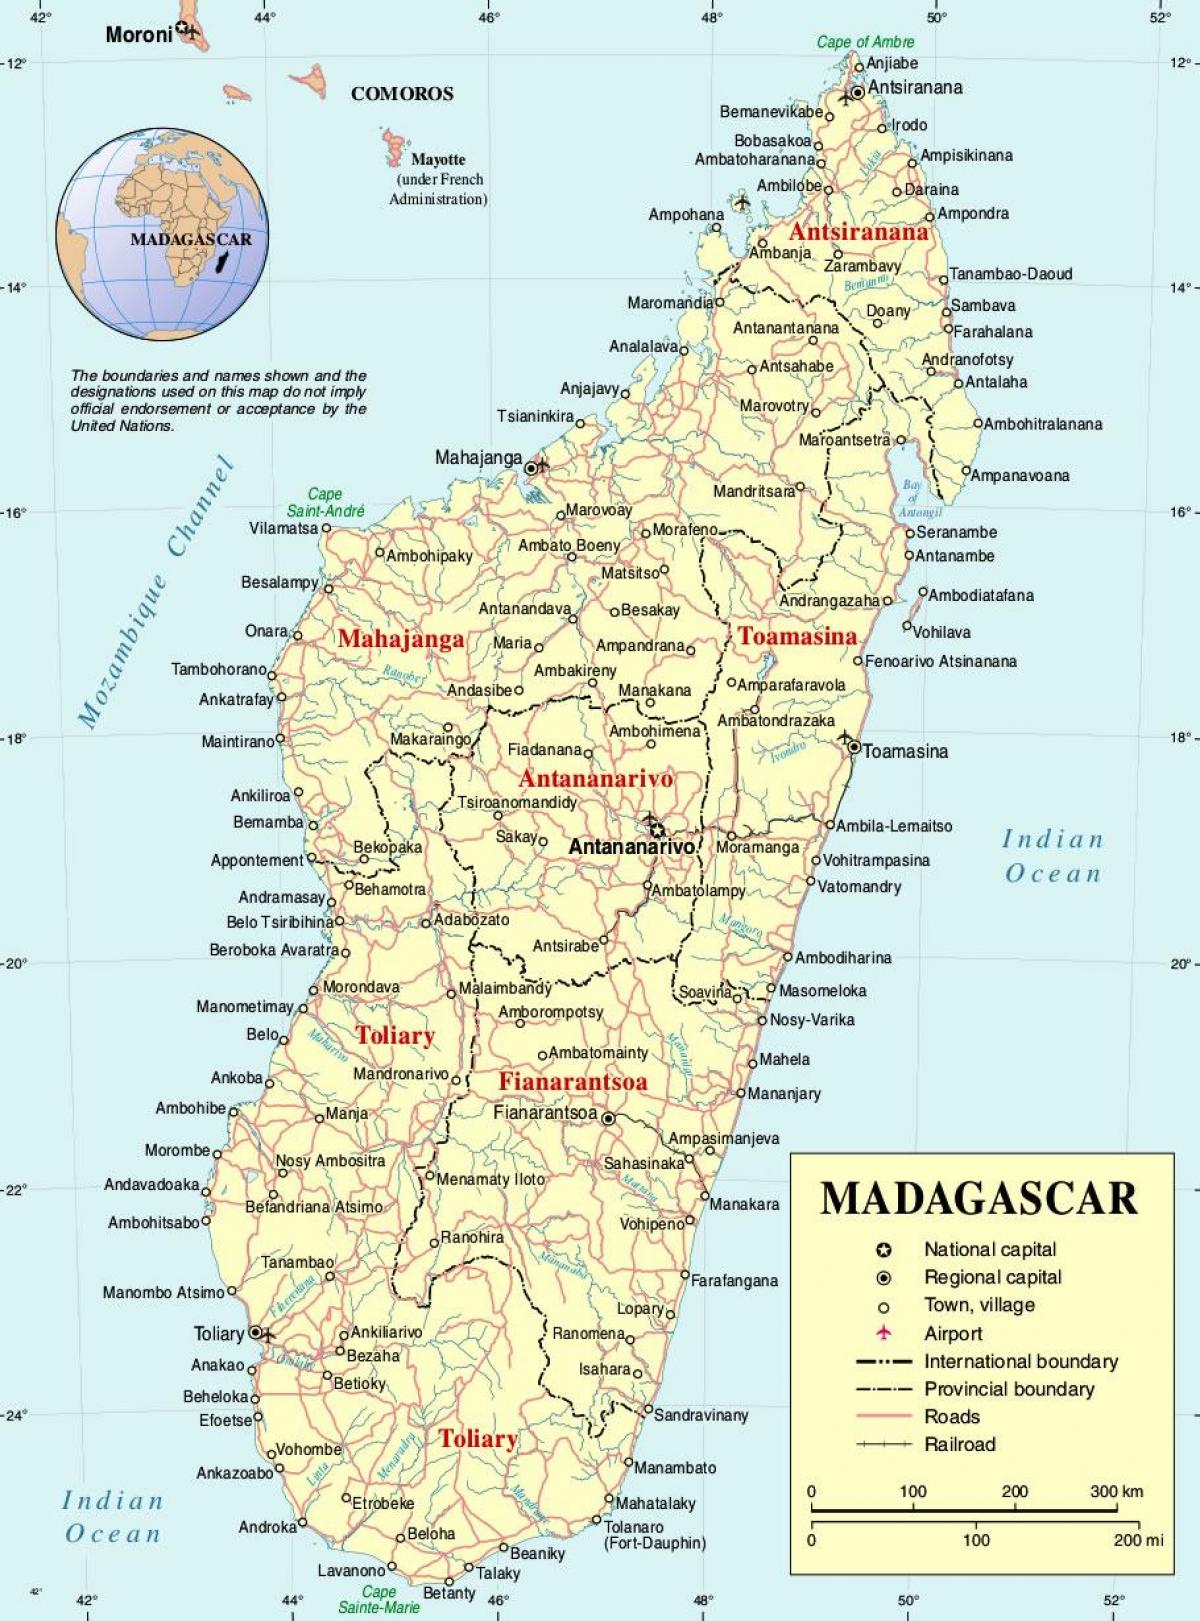 Քարտեզ Մադագասկար քաղաքների հետ